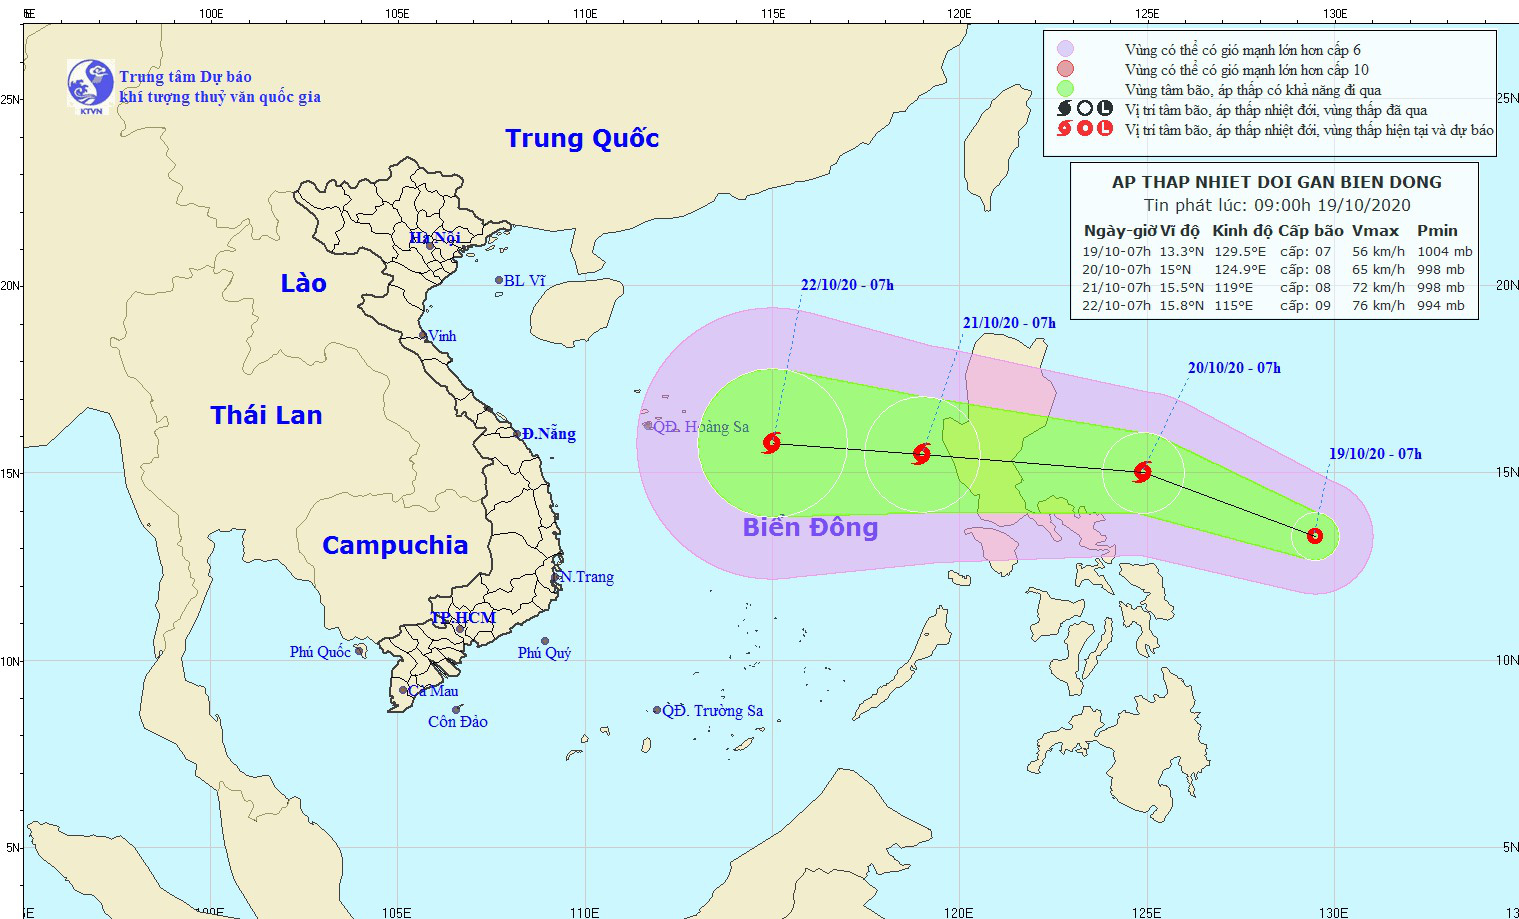 Mưa lũ miền Trung còn chưa dứt, đã xuất hiện áp thấp nhiệt đới gần biển Đông - Ảnh 1.